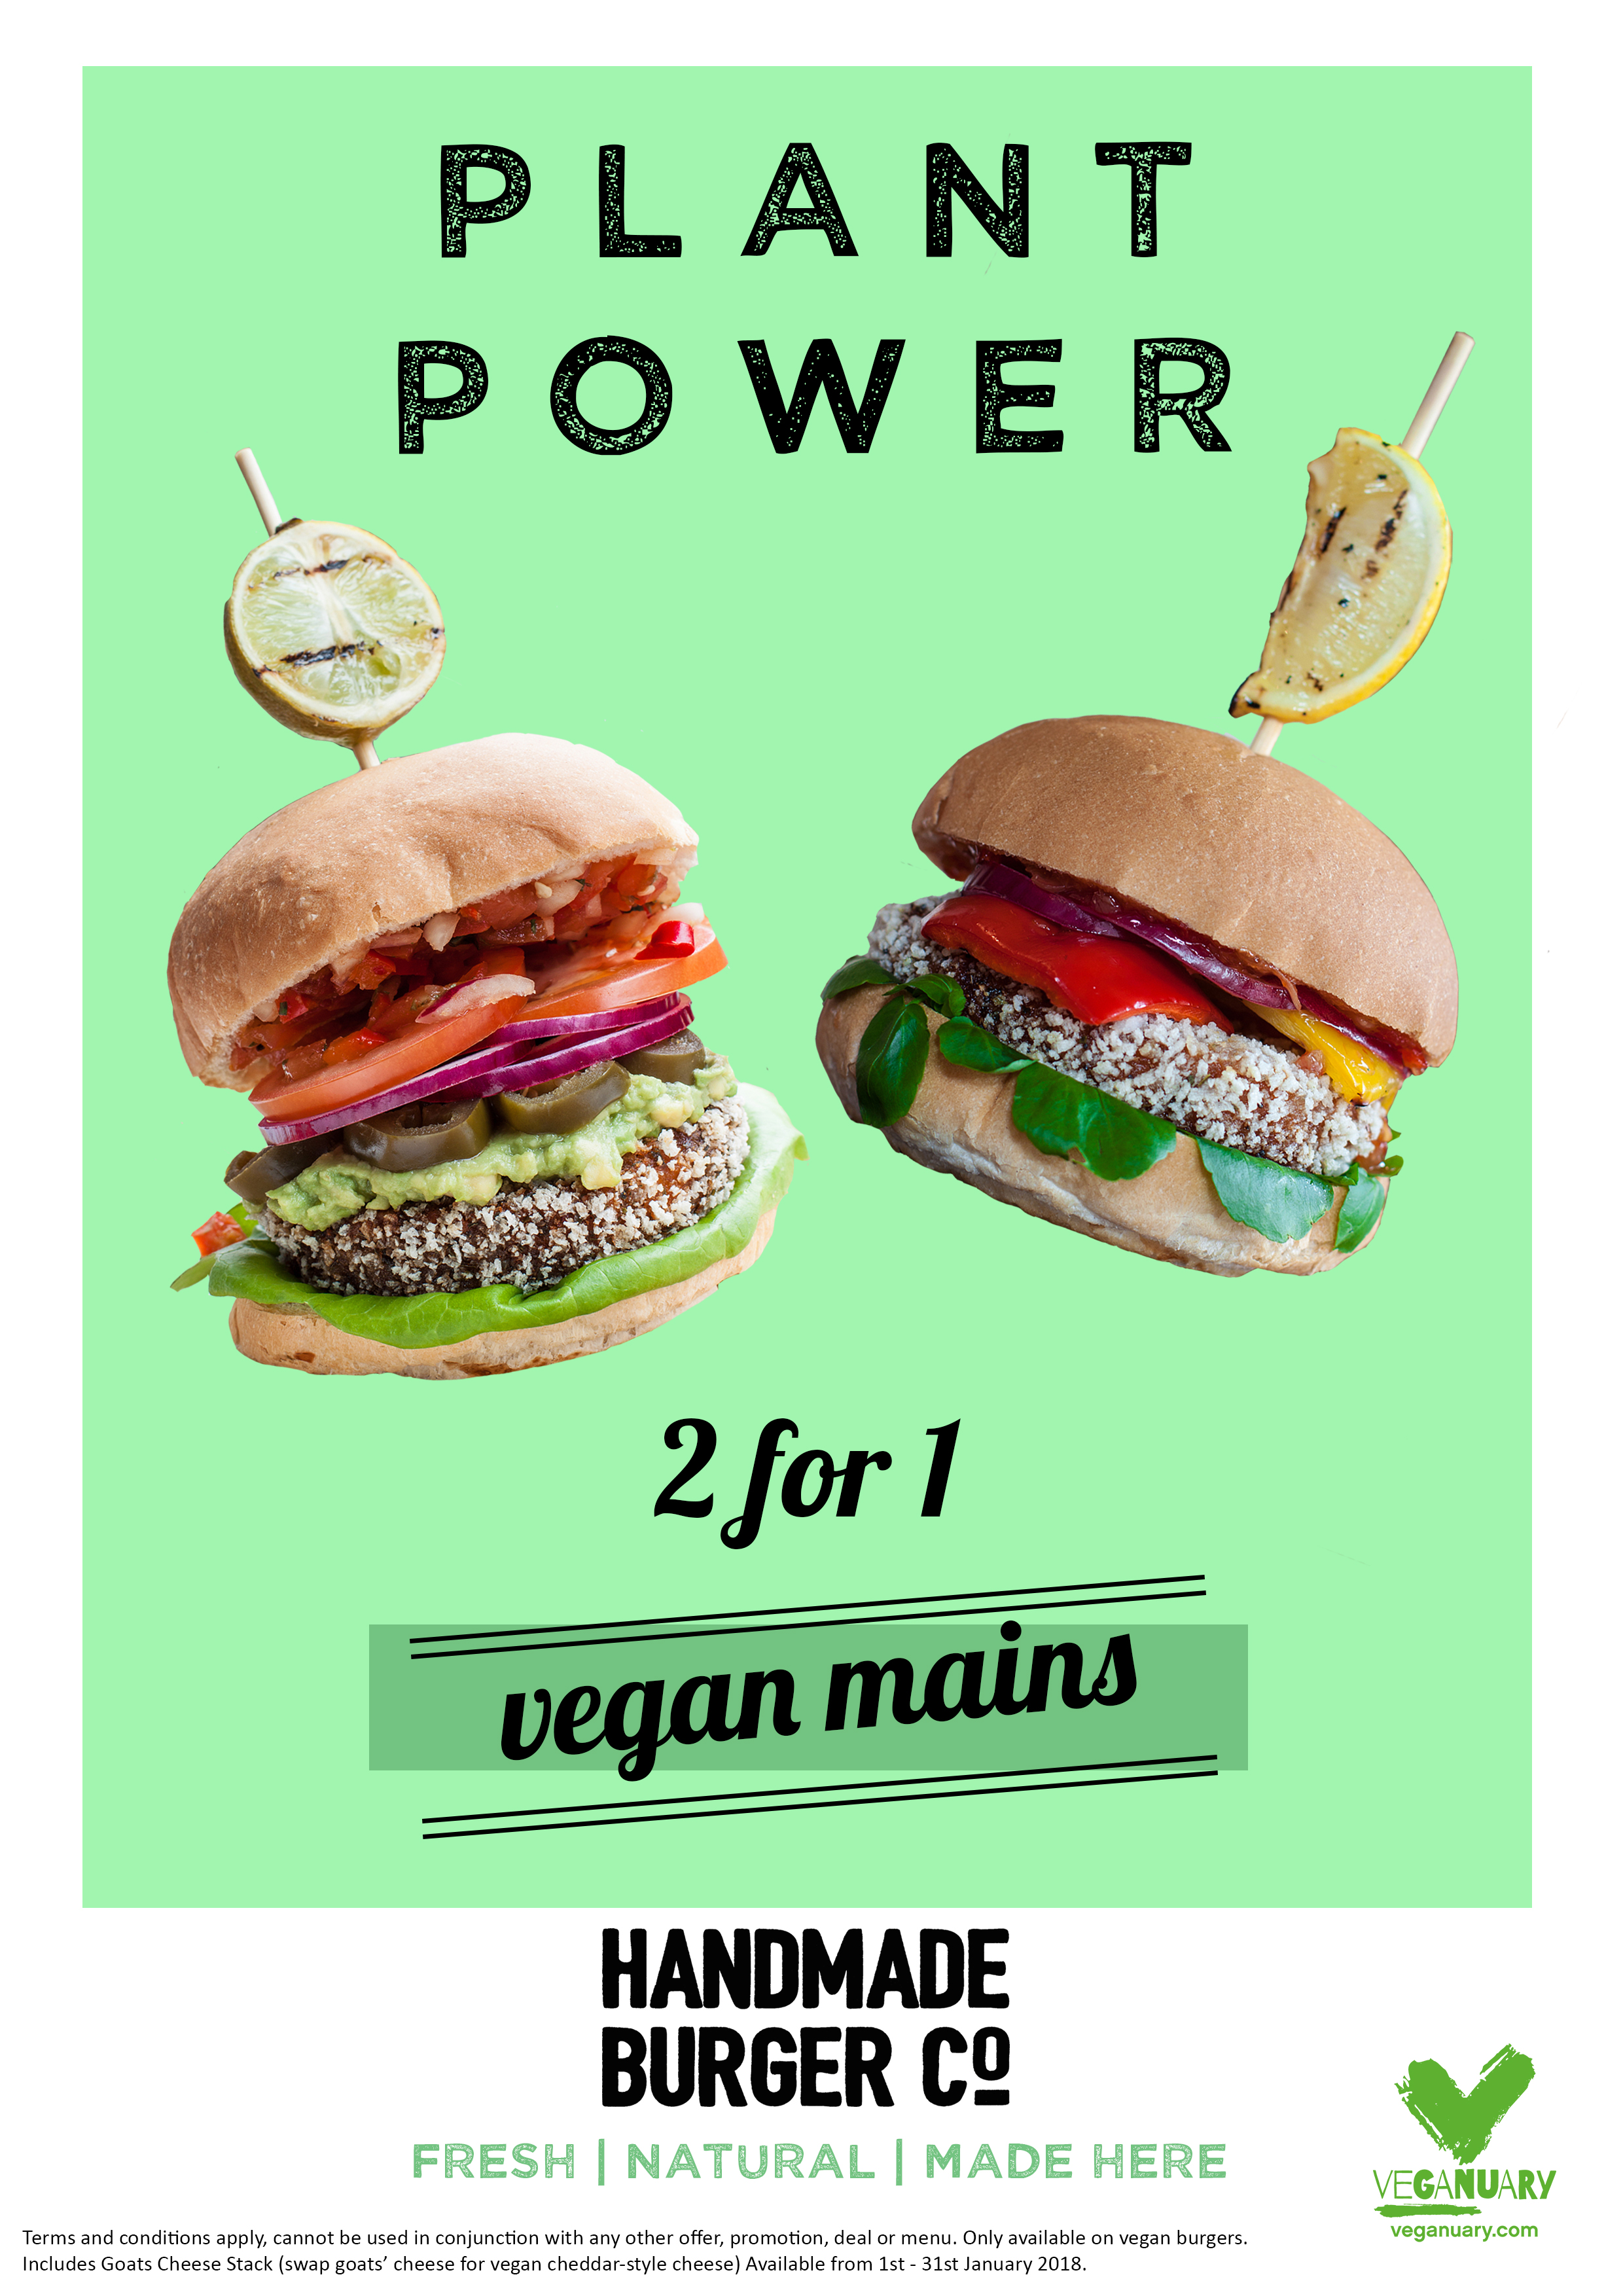 Handmade Burger Co vegan mains